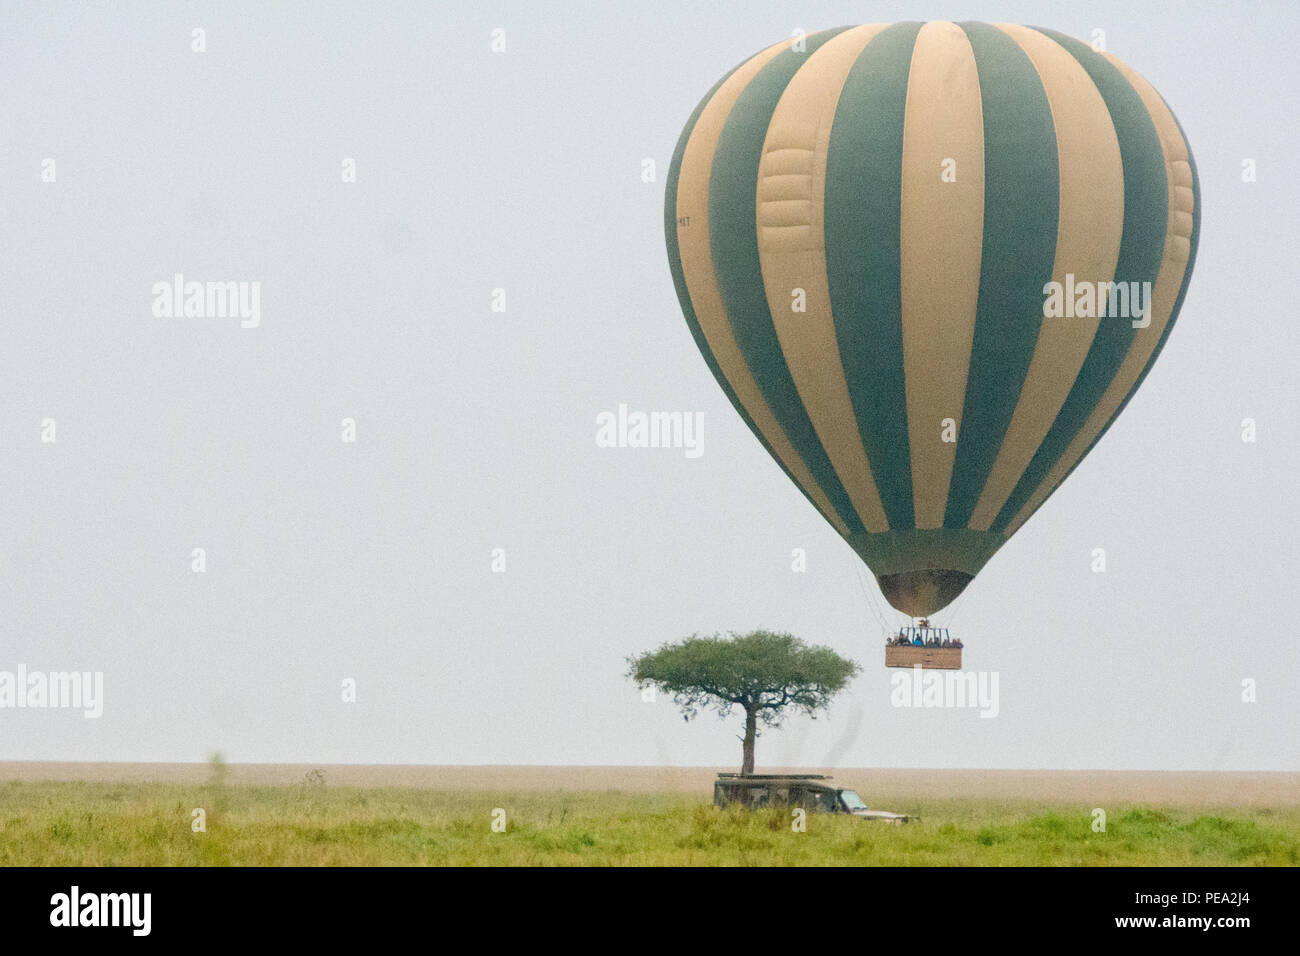 Un aire caliente ballon volando alrededor en busca de animales salvajes Foto de stock